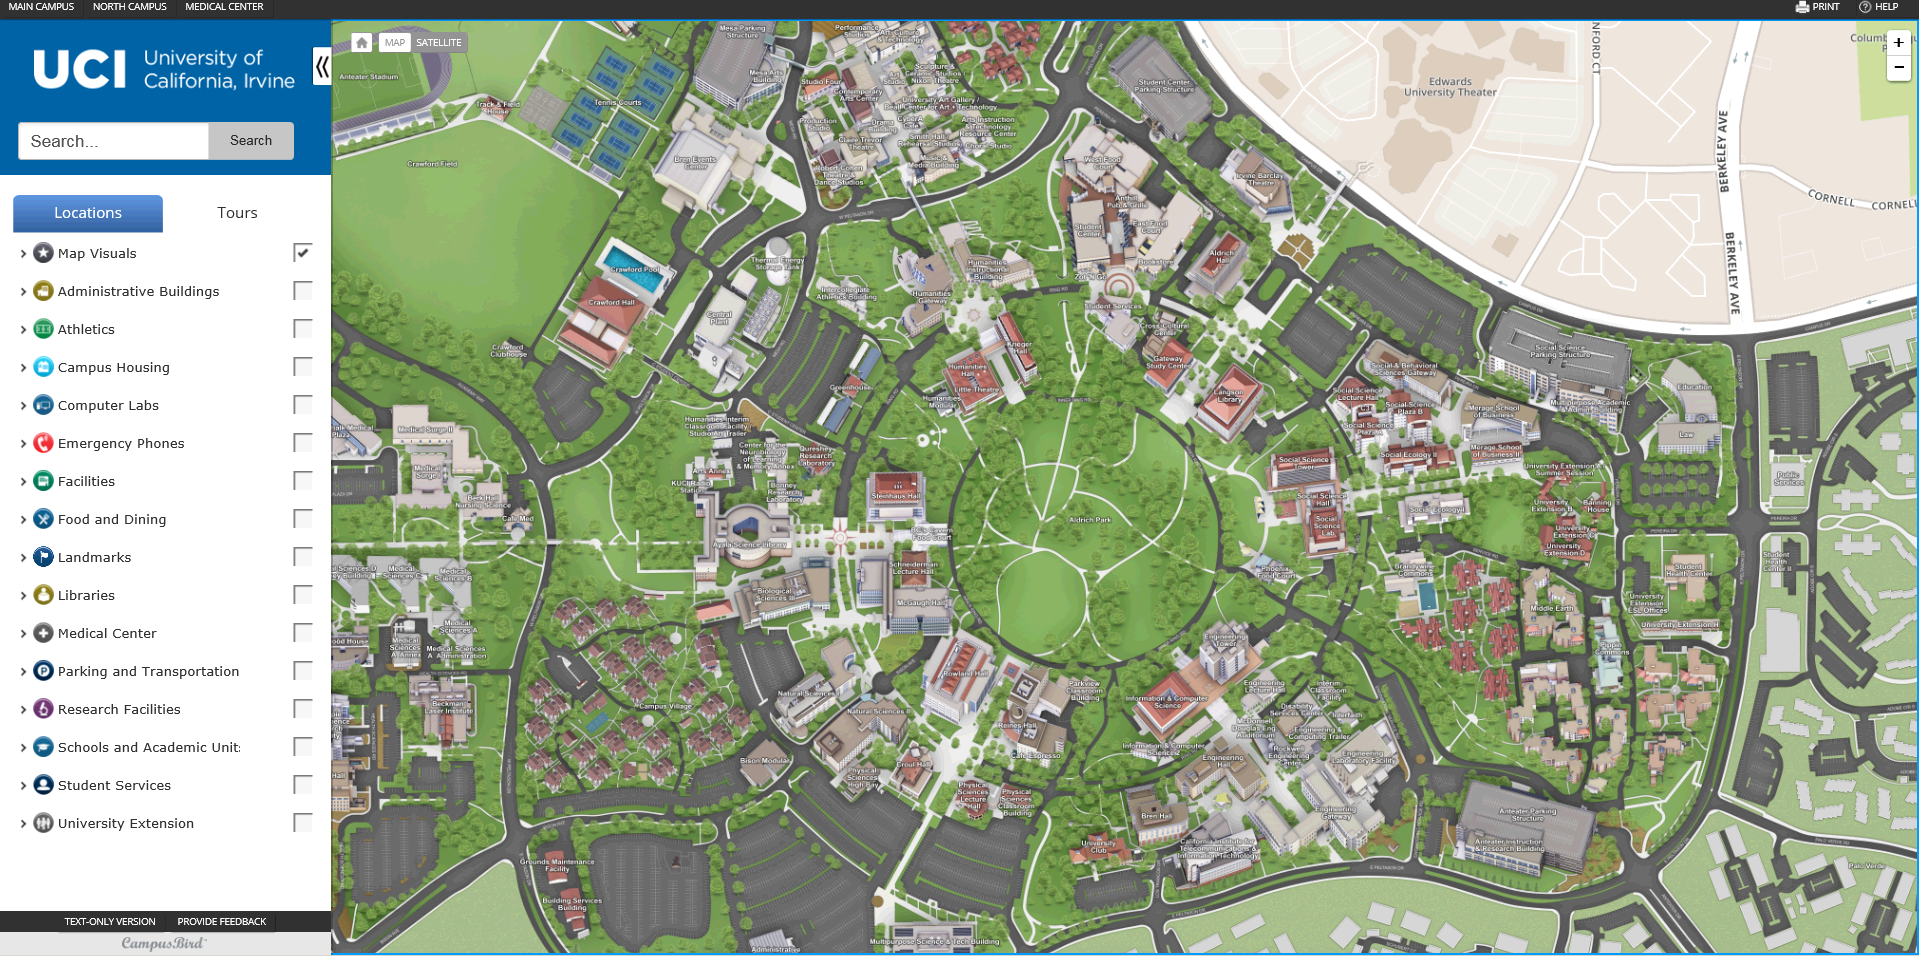 University Of California Irvine Campus Map Explore UCI With Our New Campus Map! | University of California 